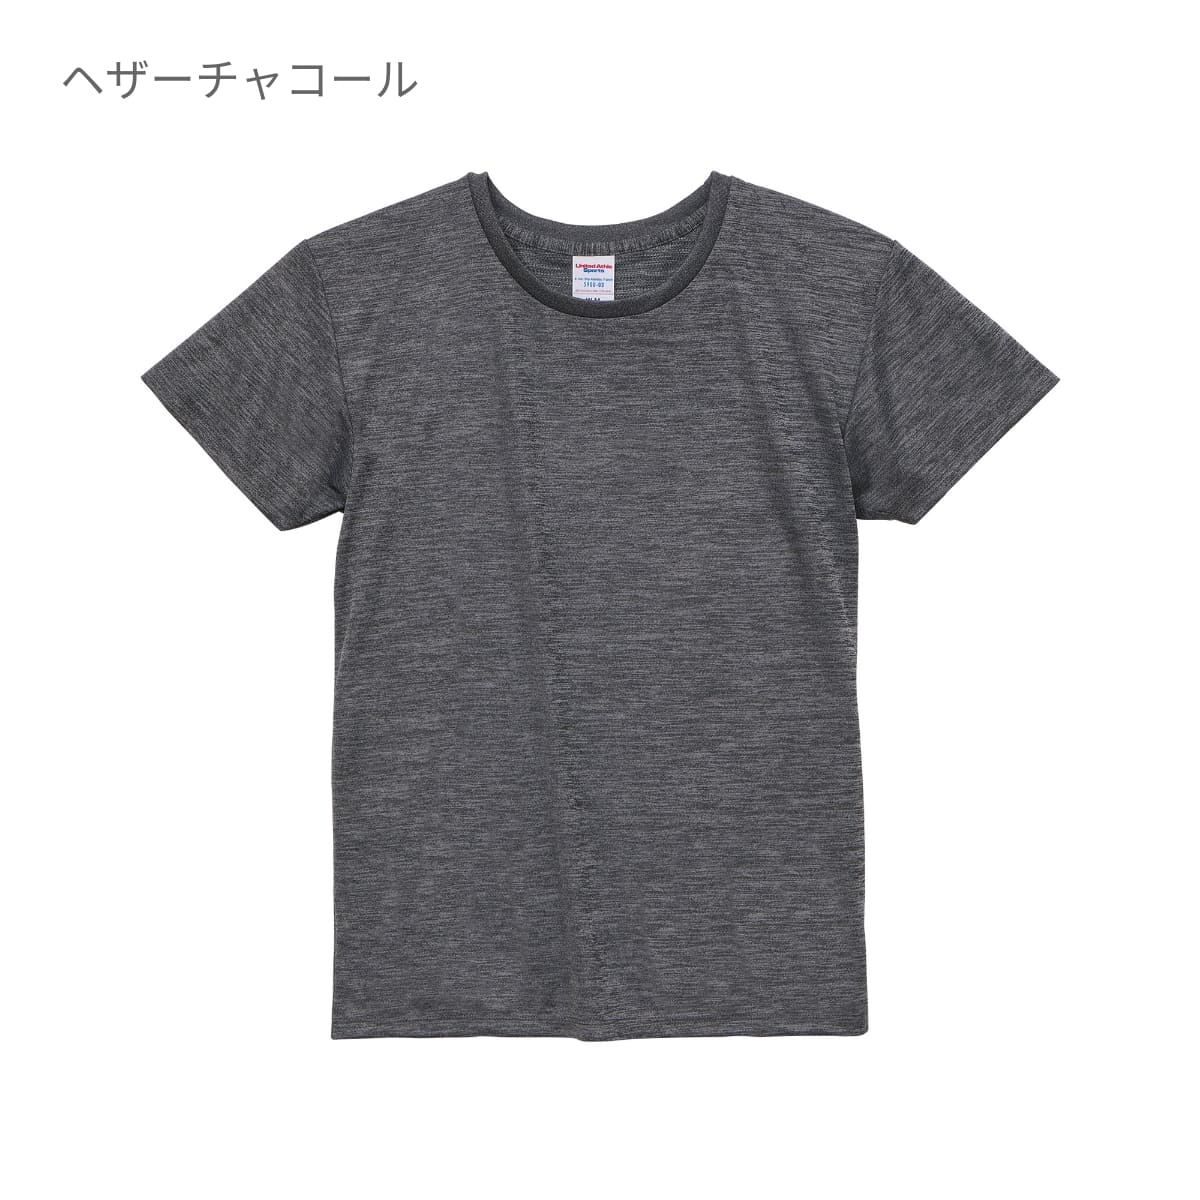 4.1オンス ドライアスレチック Tシャツ | レディース | 1枚 | 5900-03 | ベビーピンク